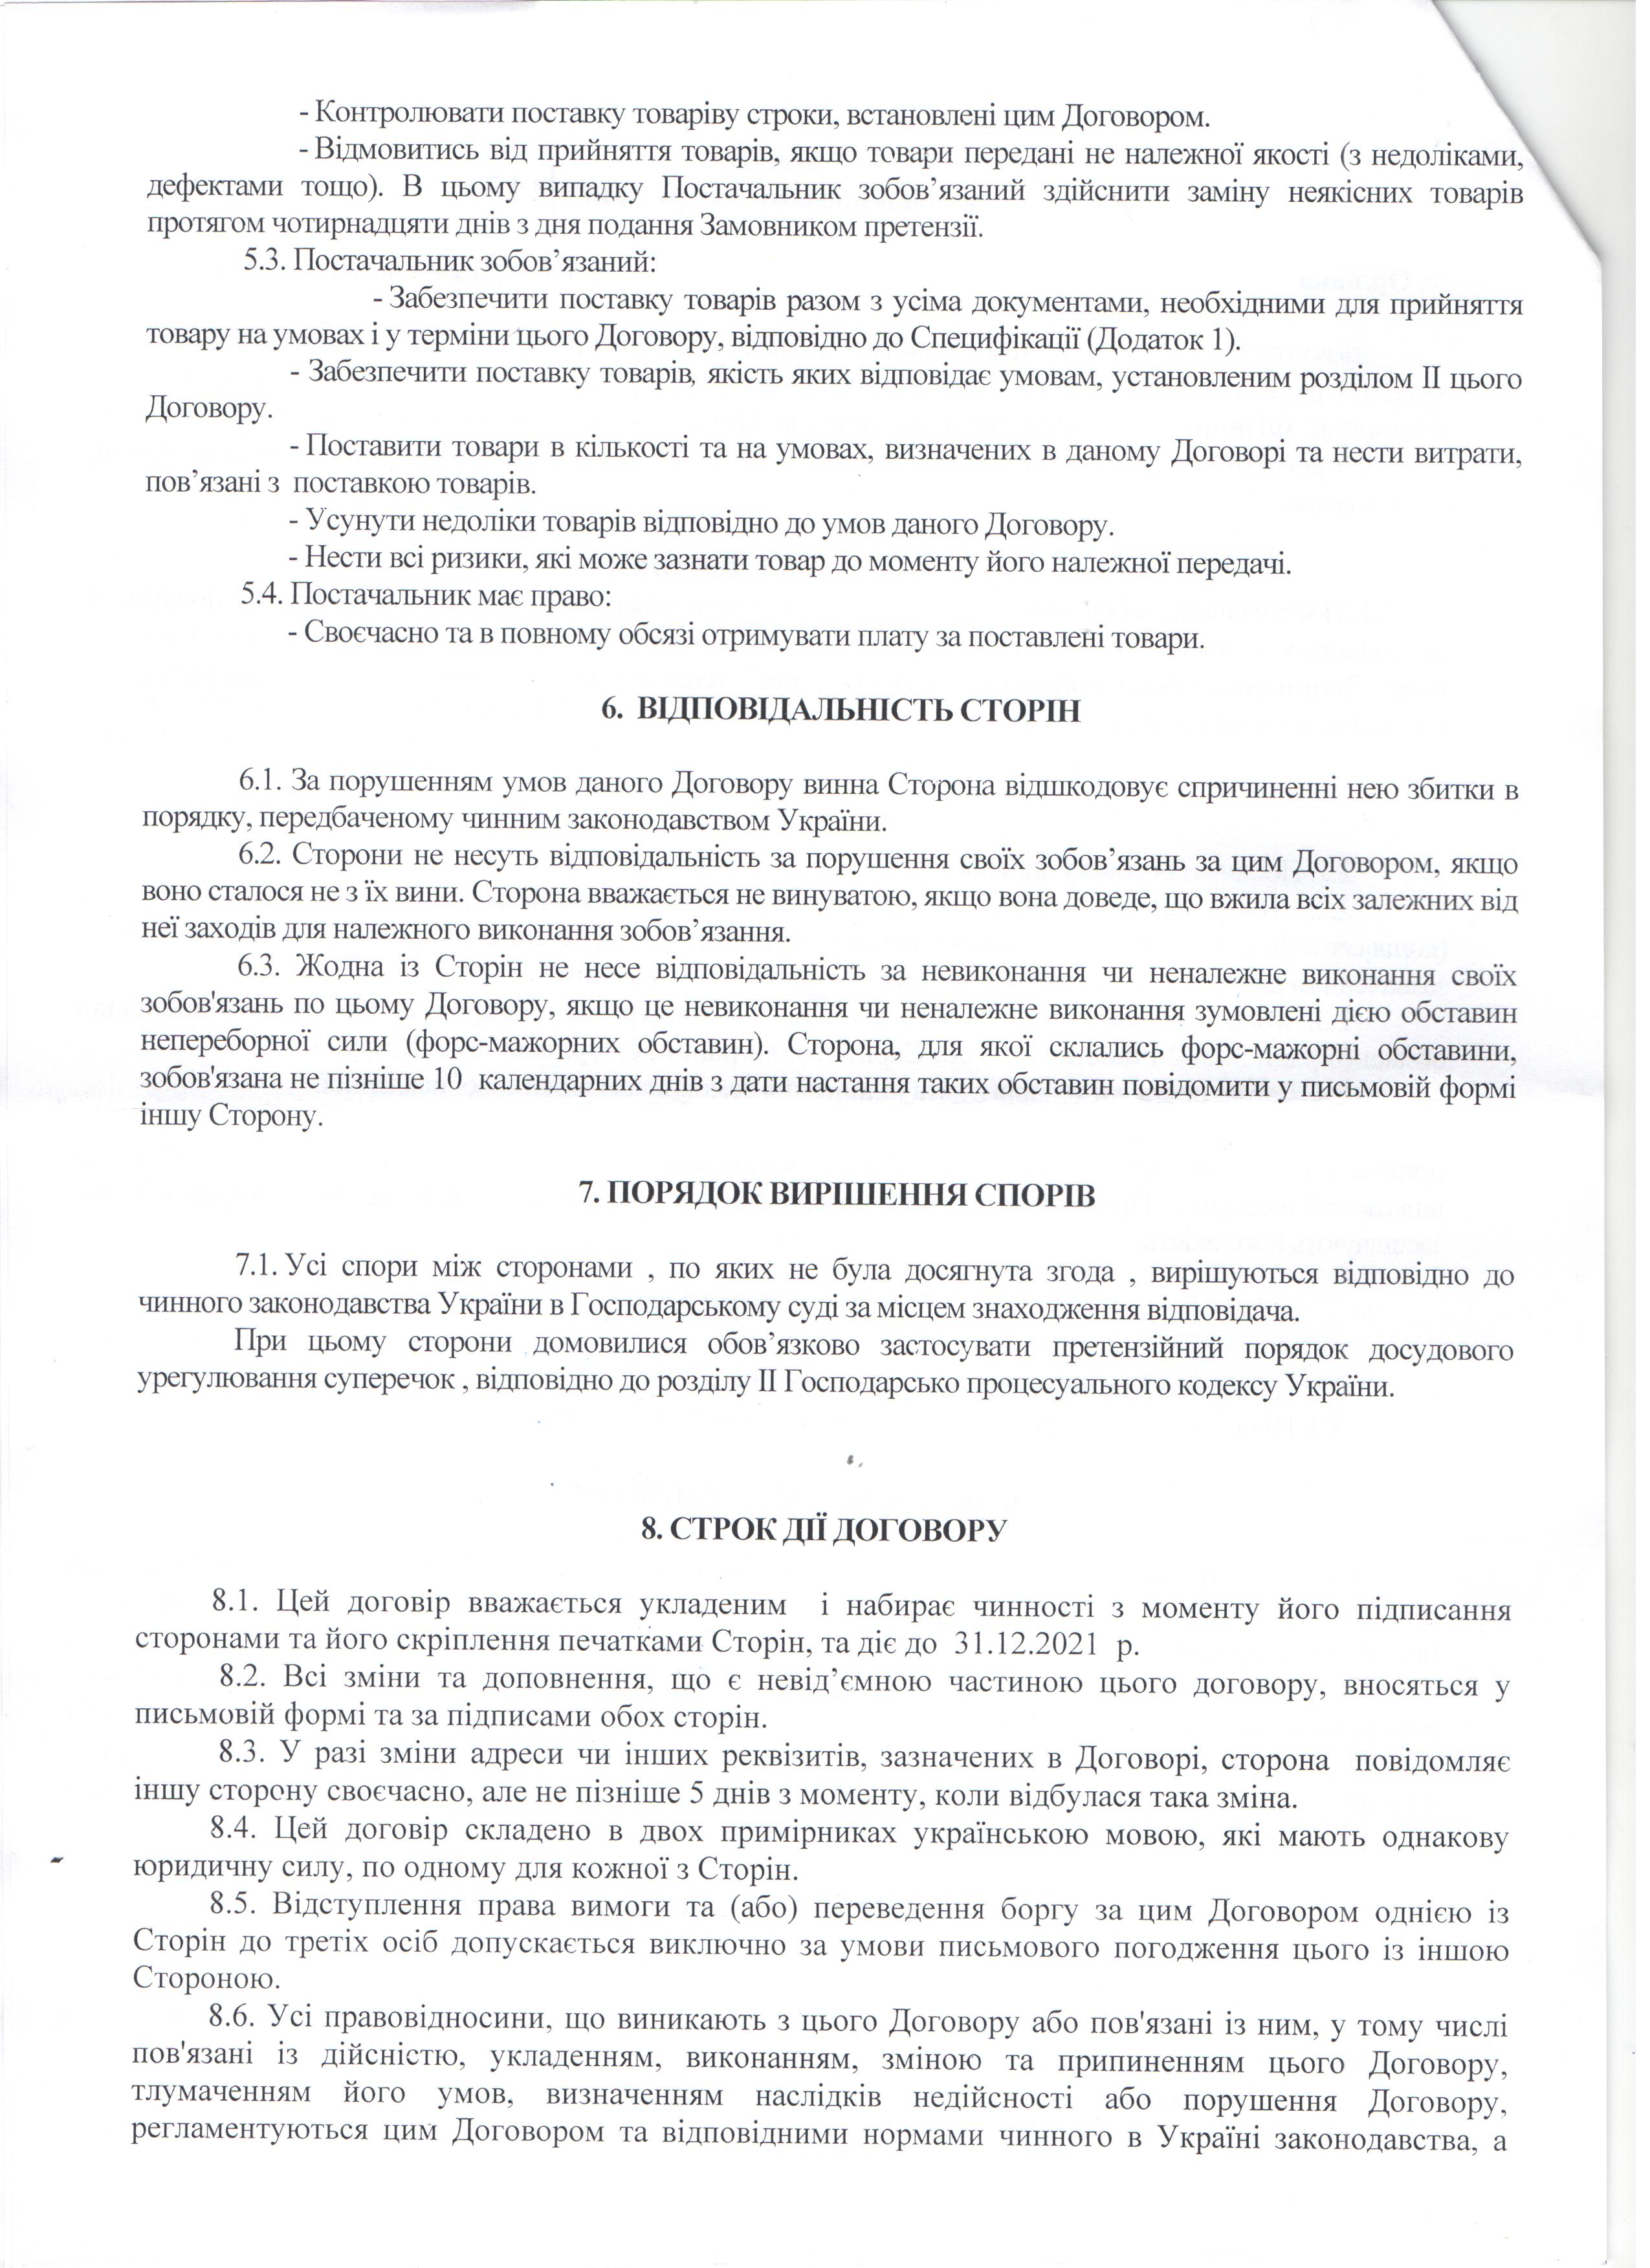 Договір №677/117 (2) від 14.09.2021 р.